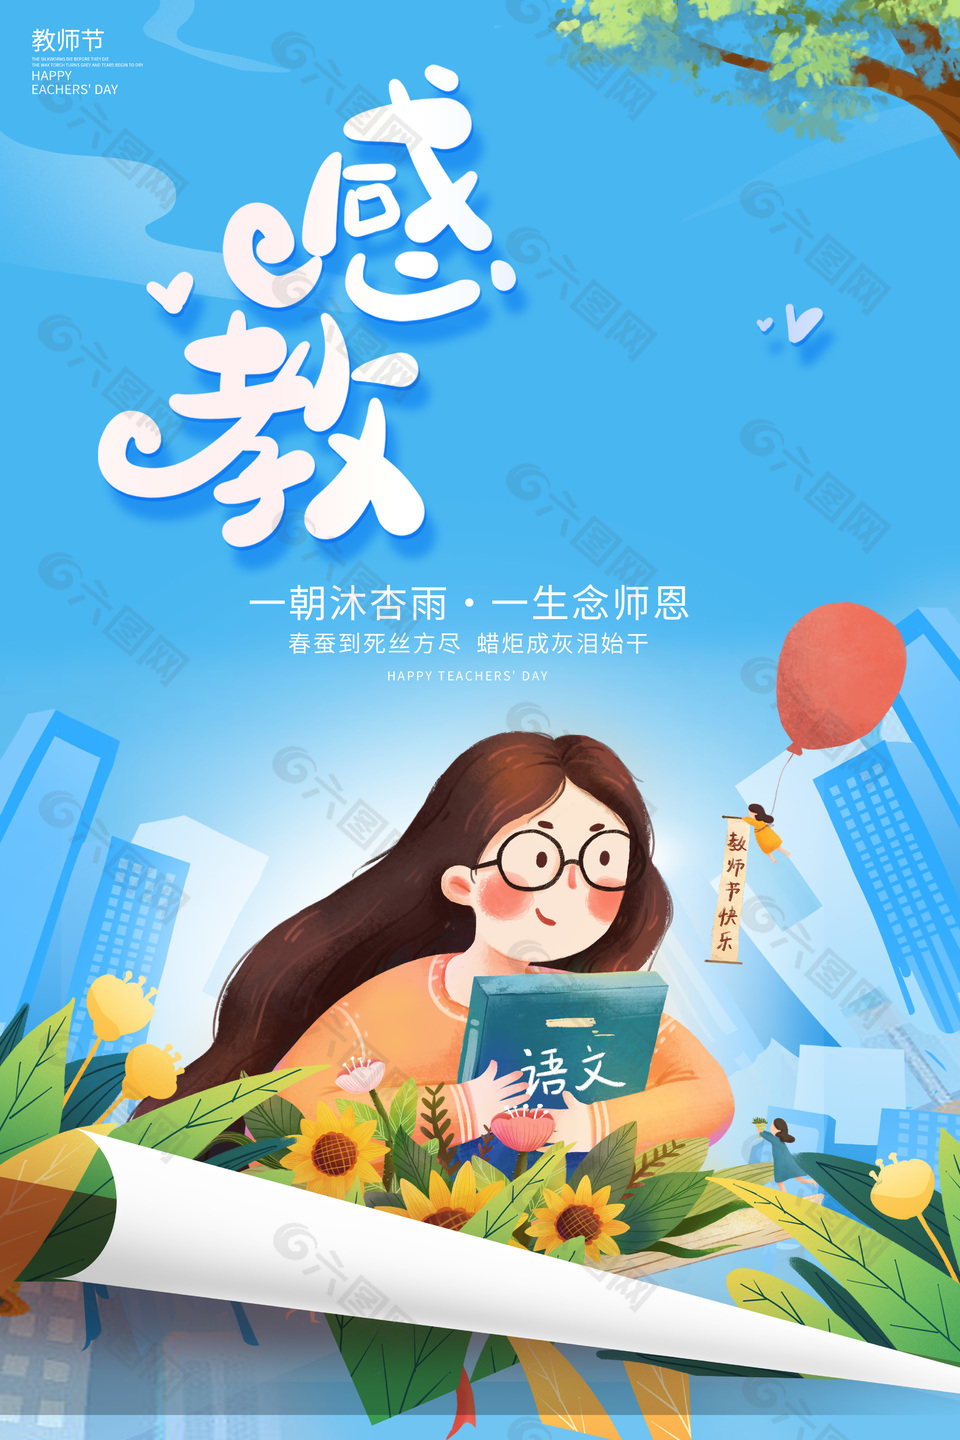 清新卡通风教师节快乐节日海报下载